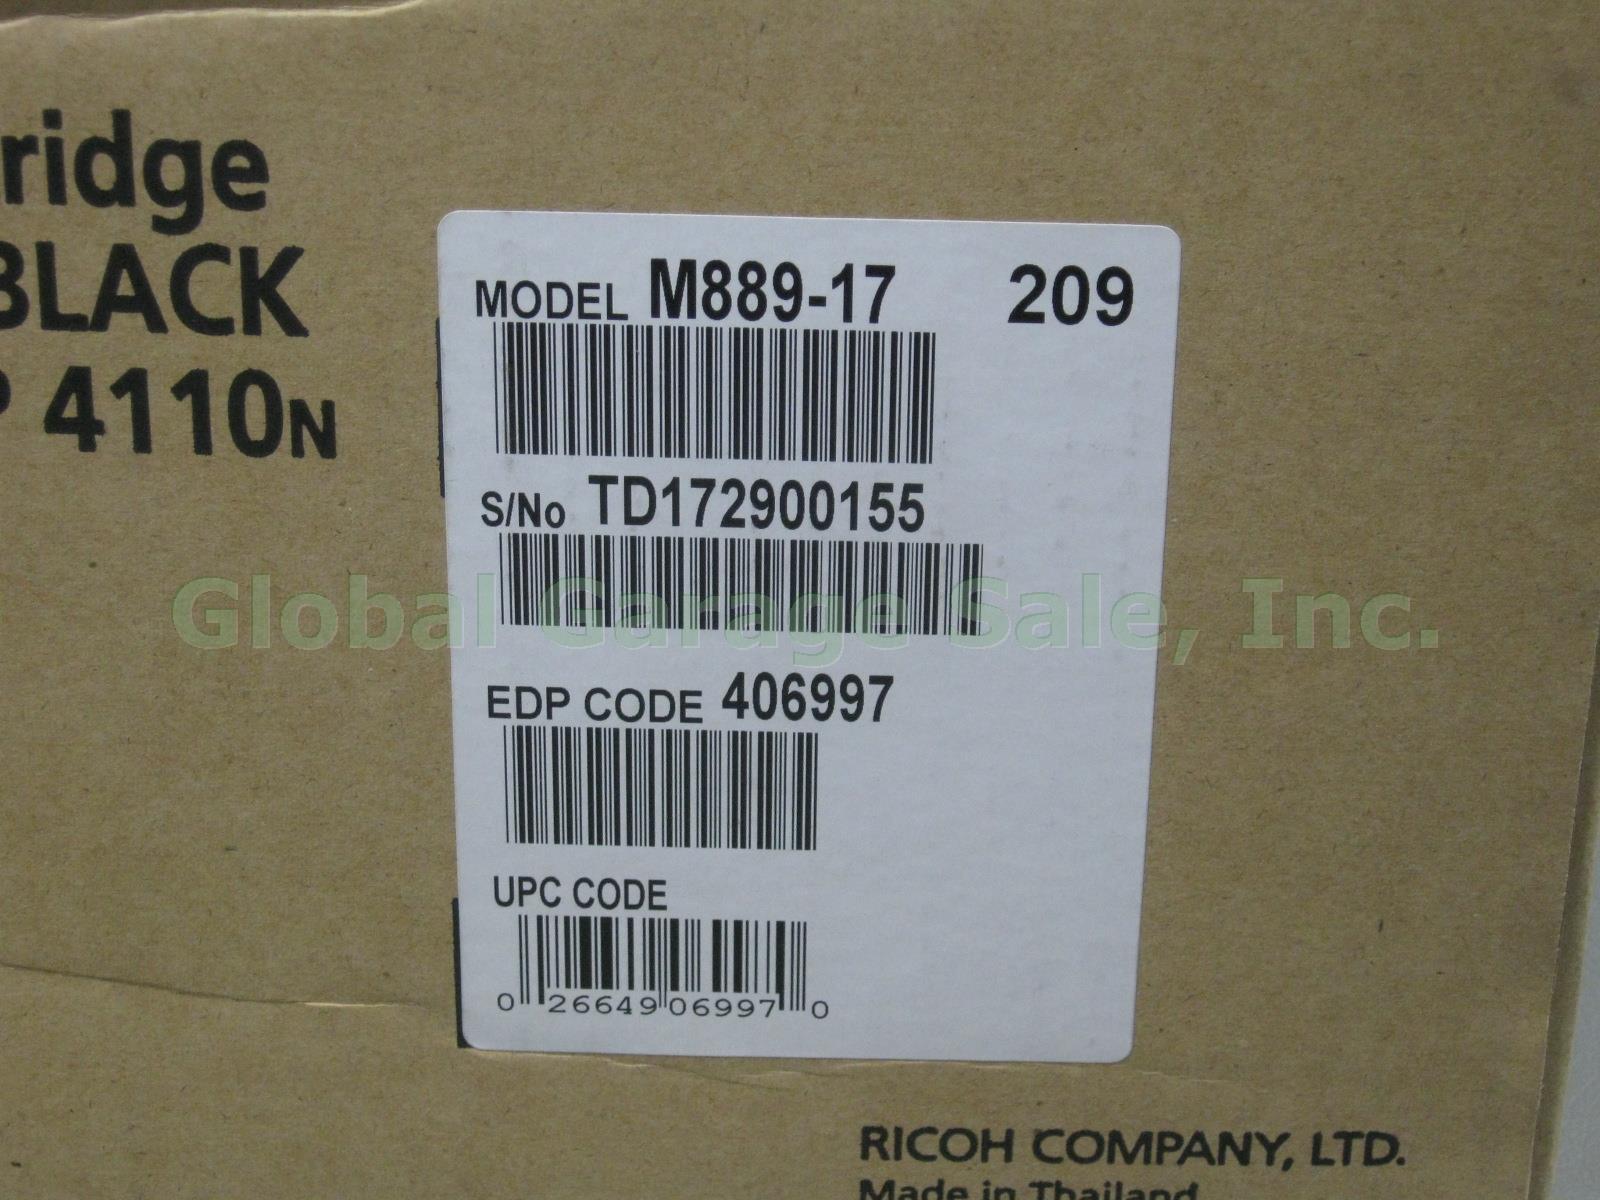 Ricoh Print Cartridge SP4100 Type 120 Black M889-17 406997 For SP 4100N 4110N NR 1